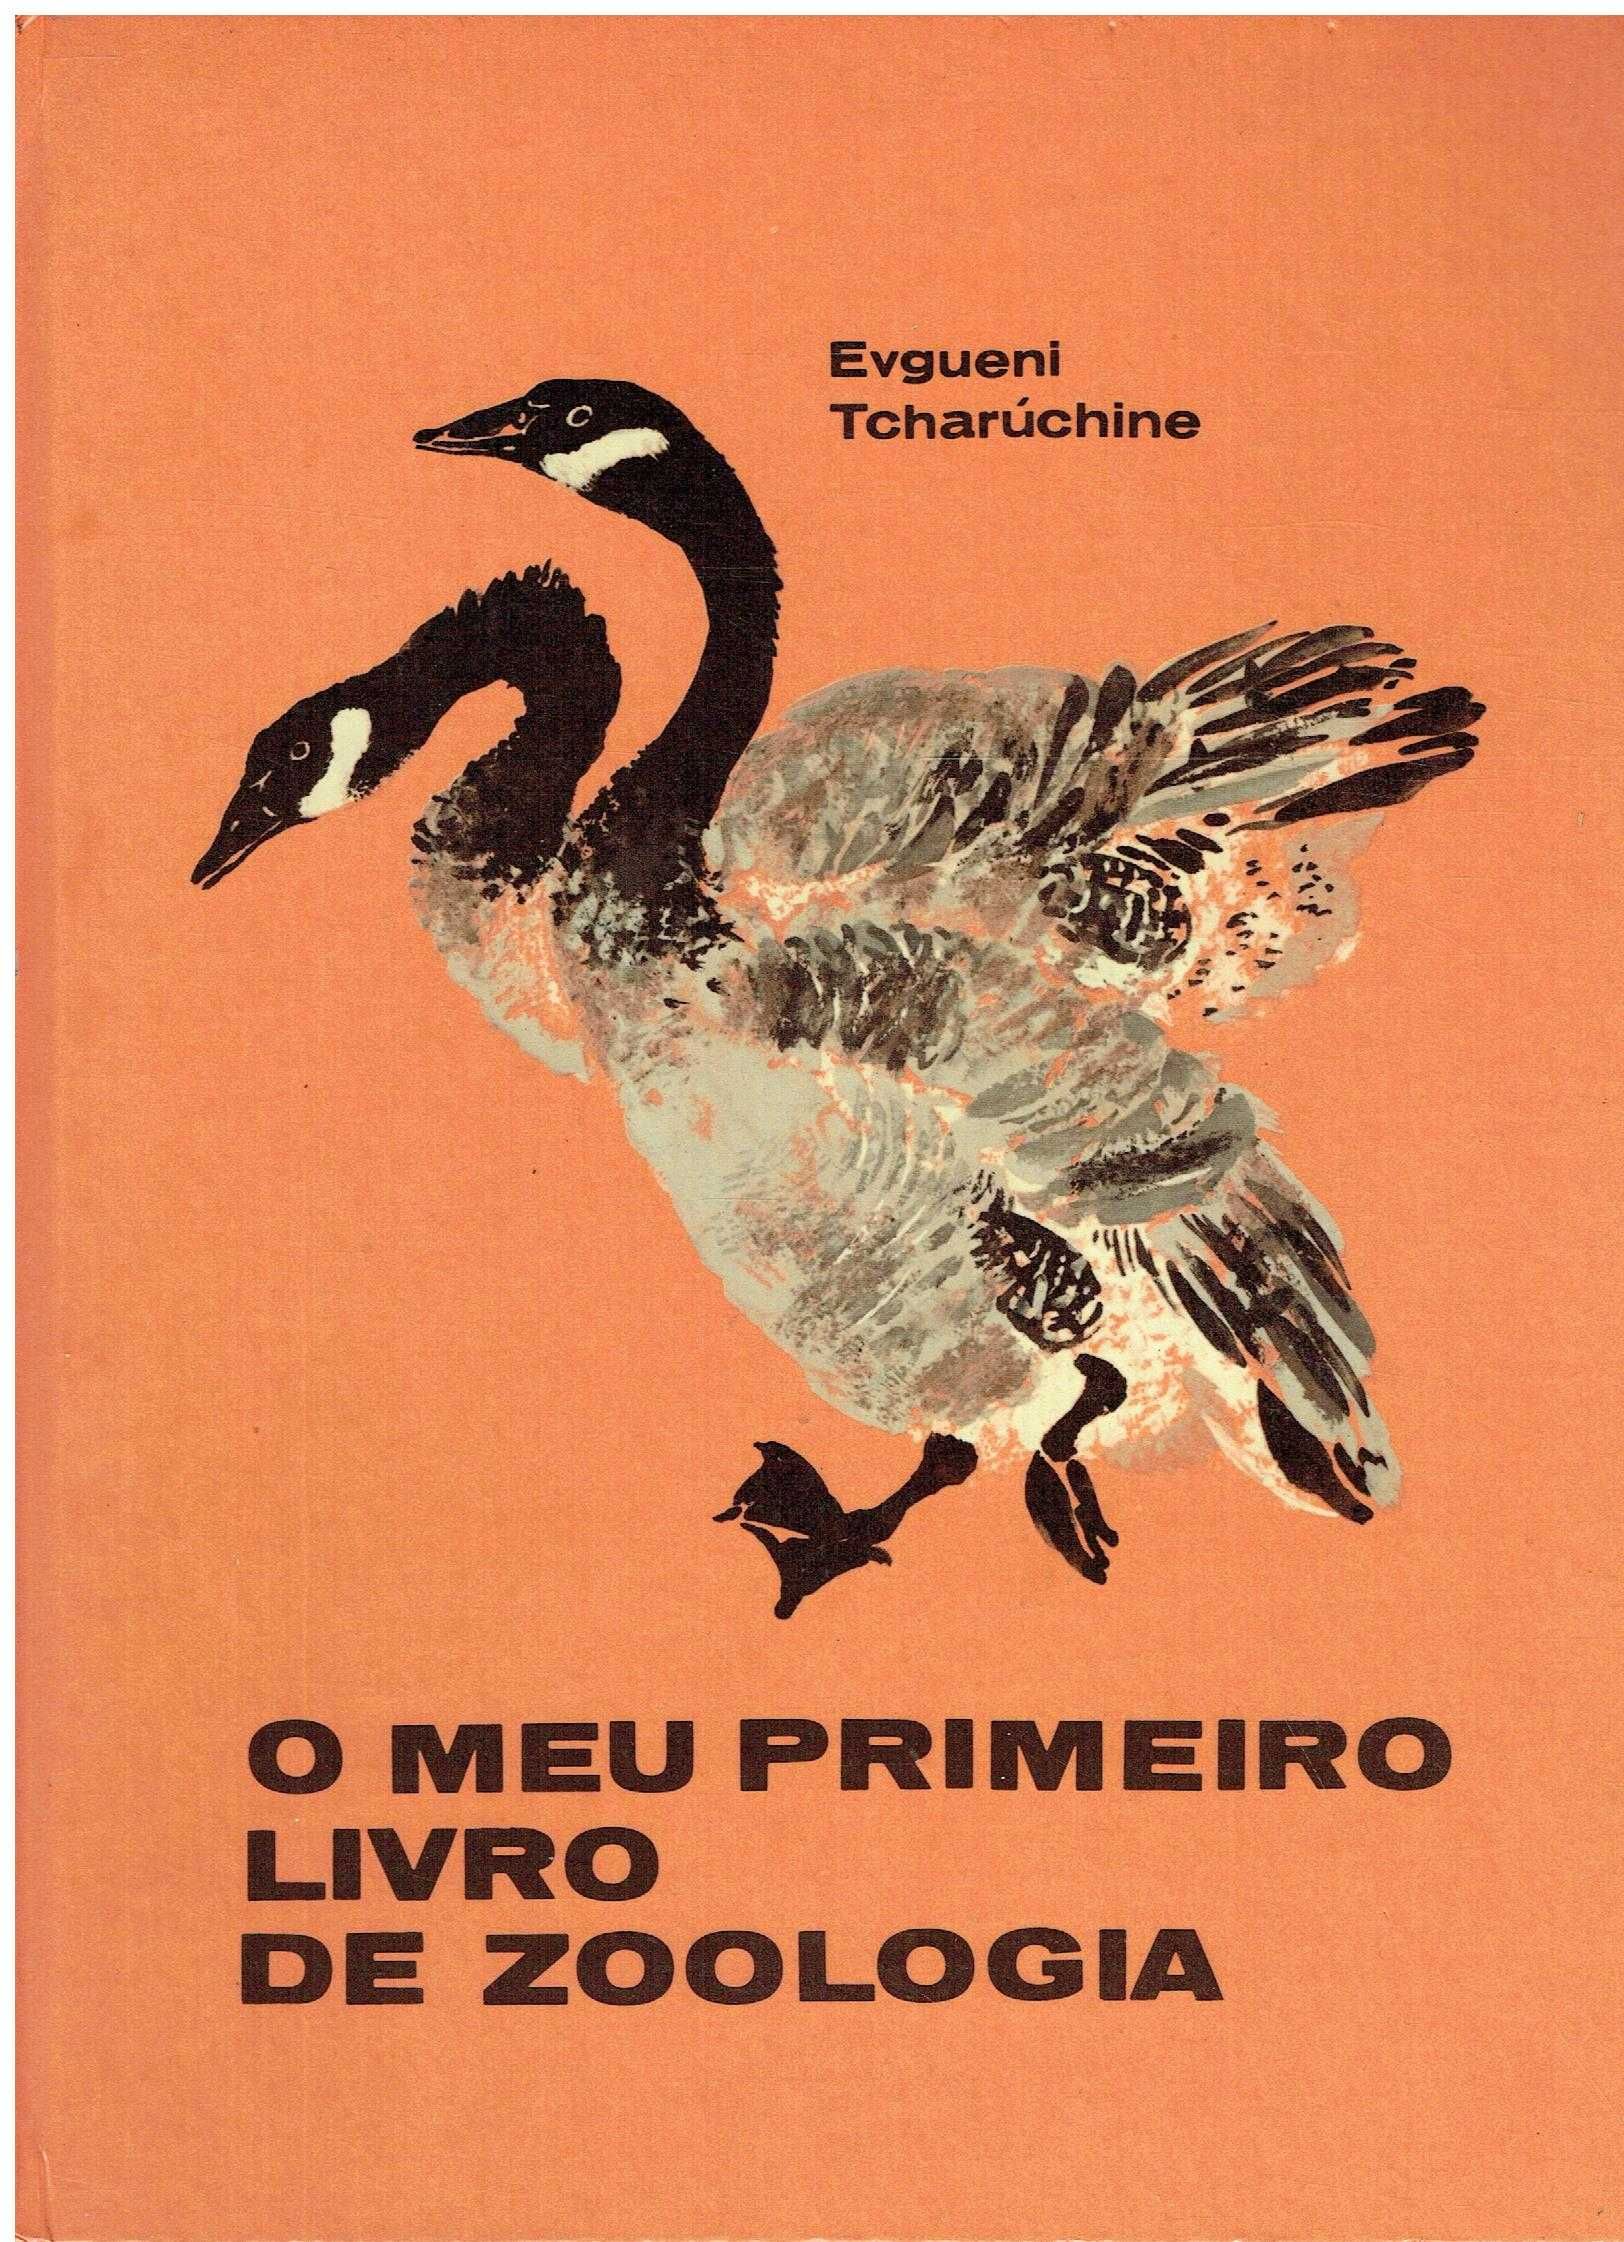 13715

O Meu Primeiro Livro de Zoologia
de Evgueni Tcharuchine